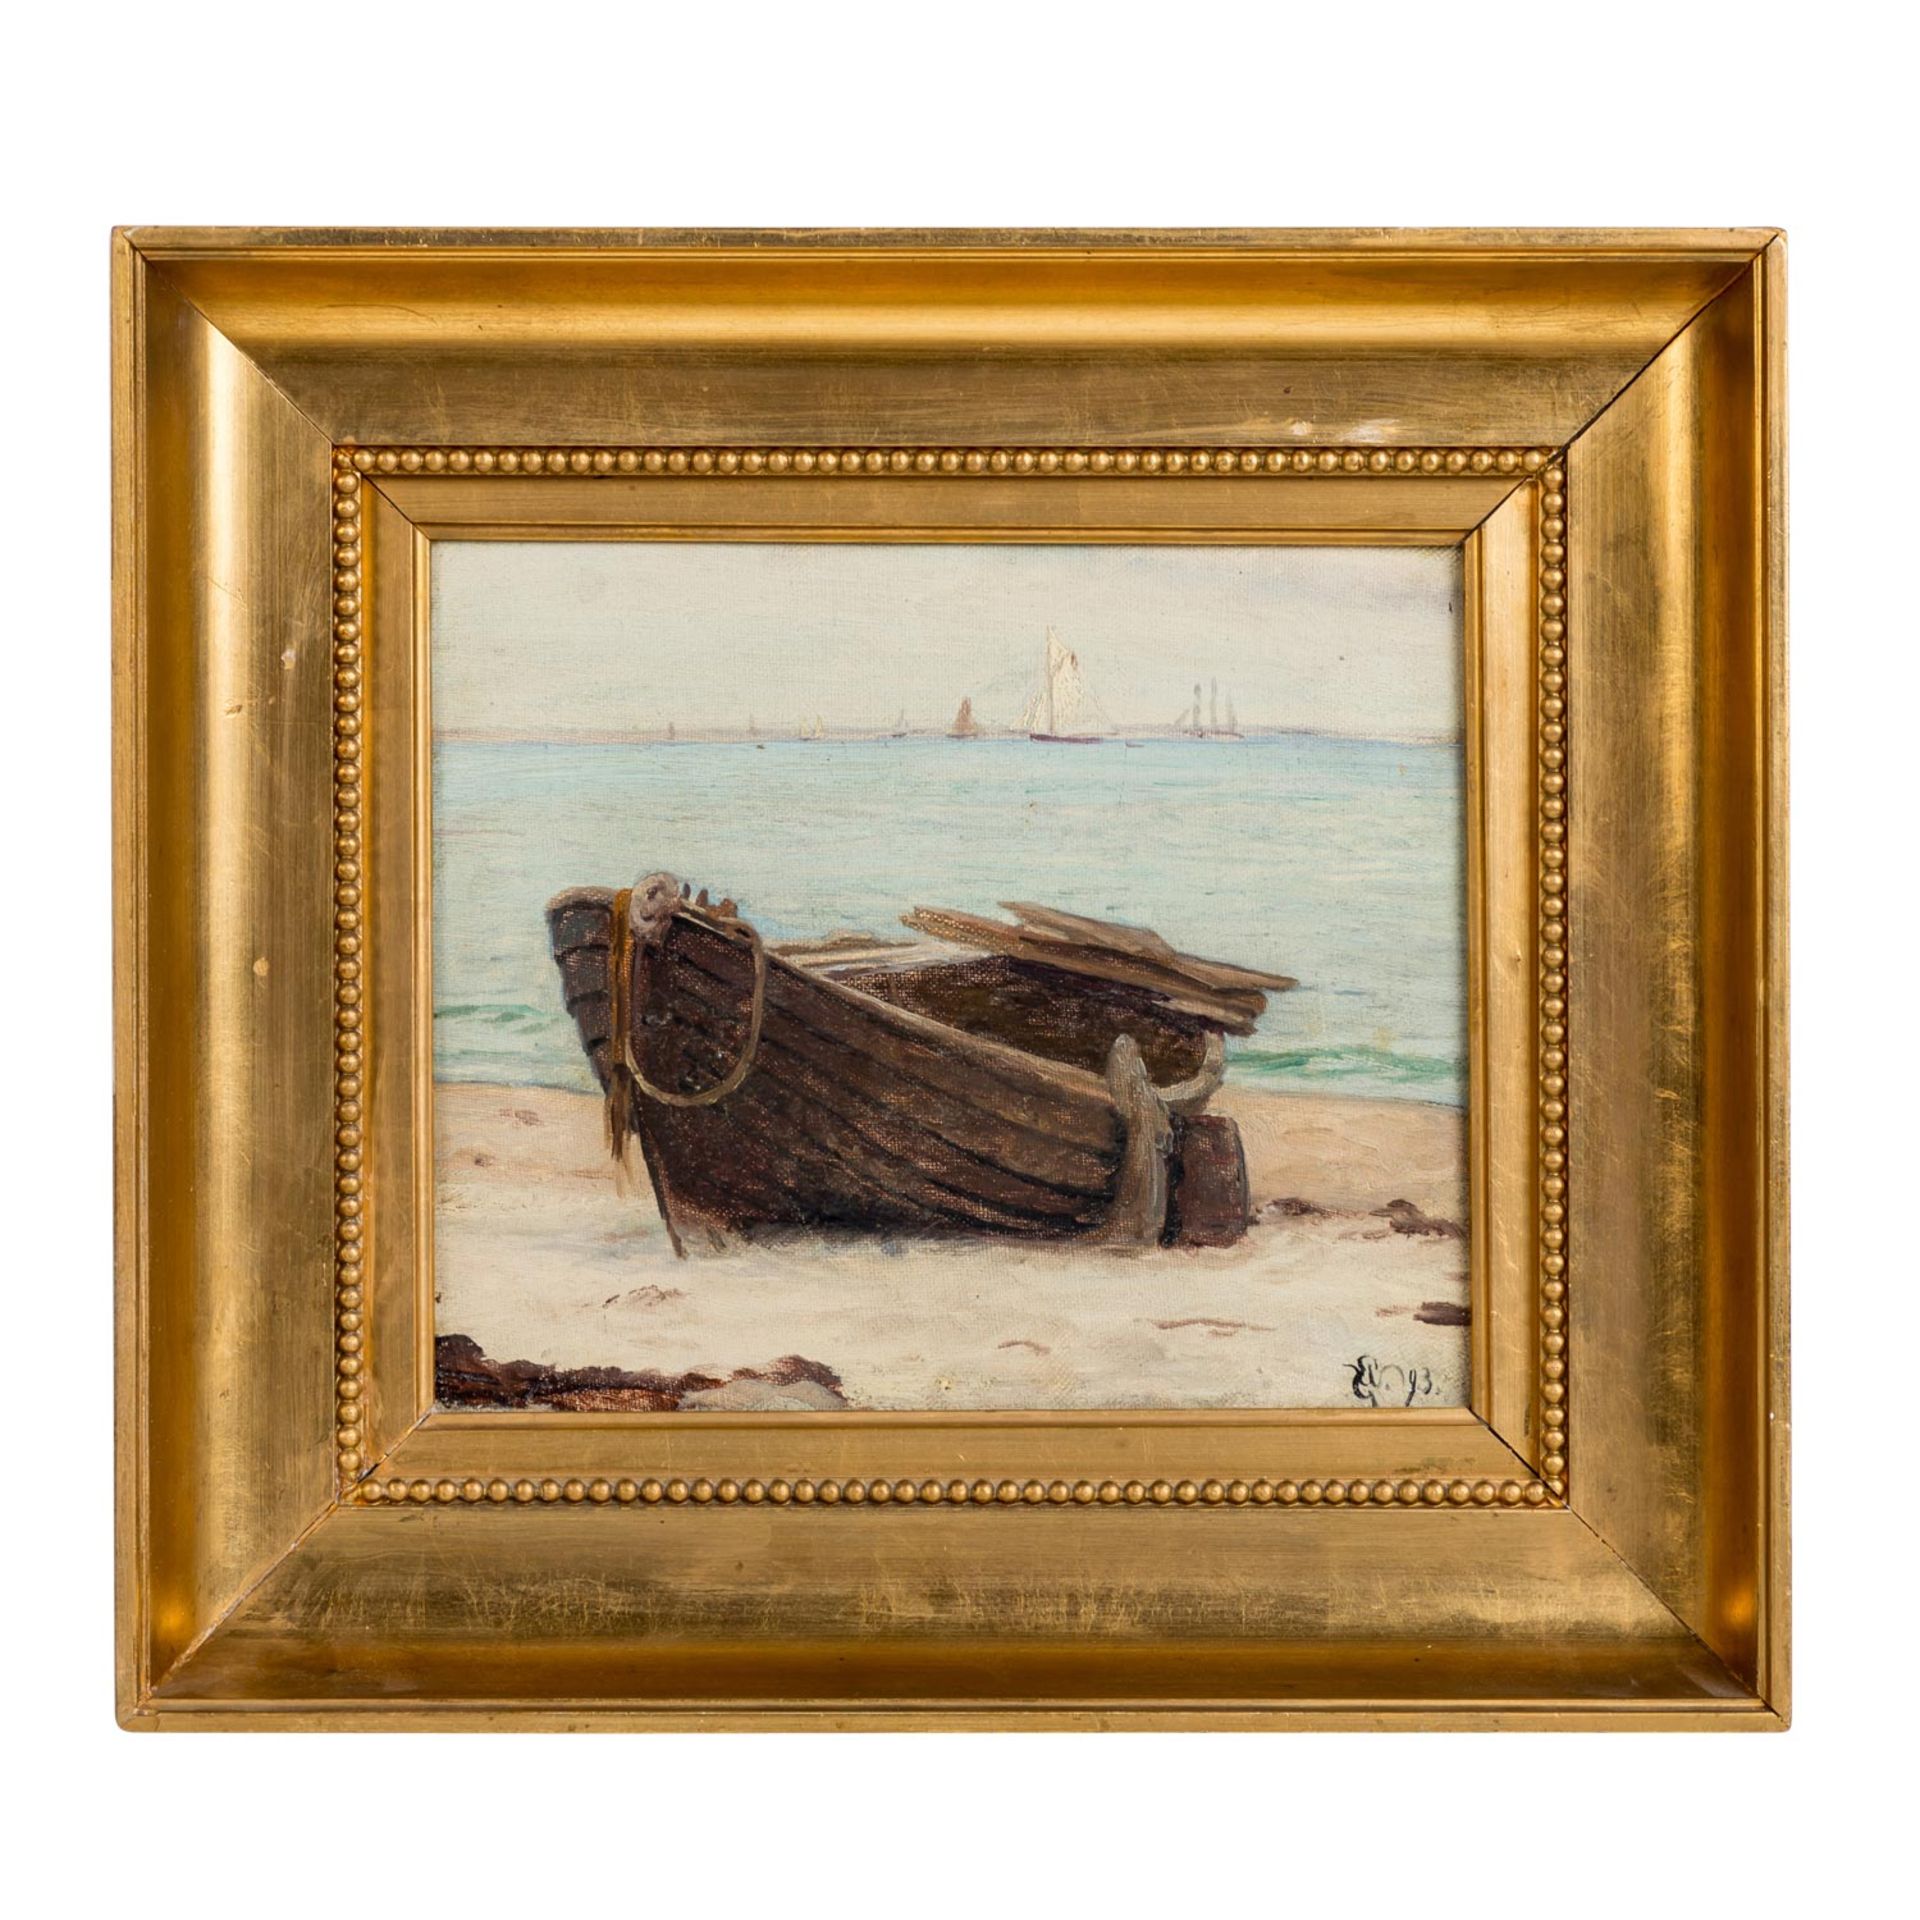 WINNERWALD, EMIL (1859-1934) "Verfallendes Ruderboot auf Strand"Öl auf Leinwand, mono - Image 2 of 4